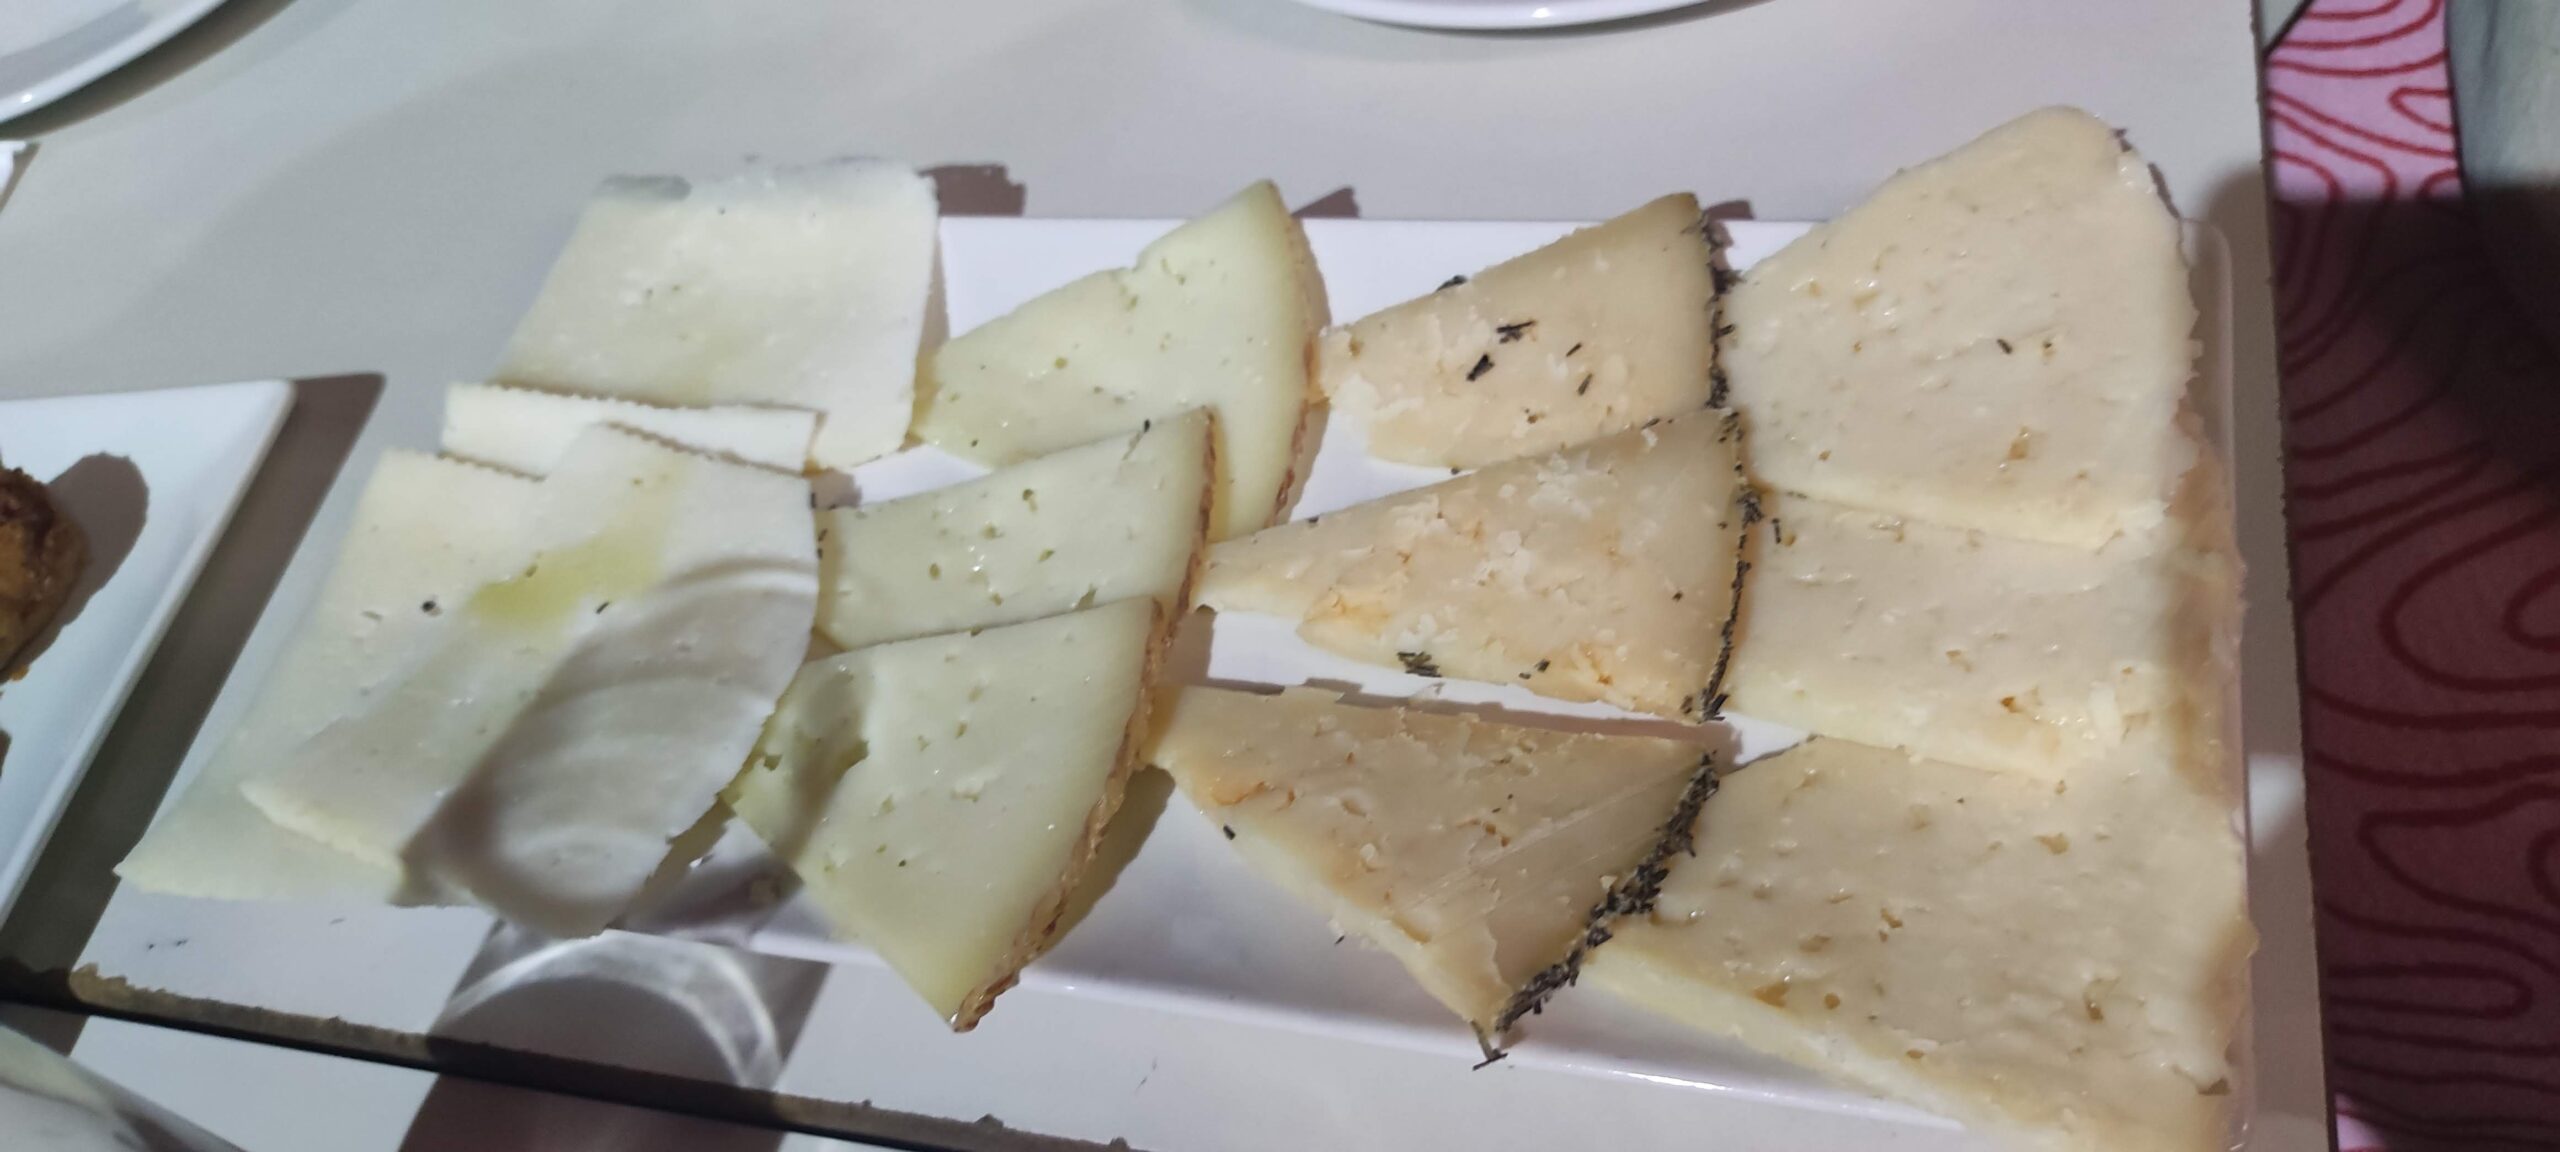 Tabla de quesos, Cuenca